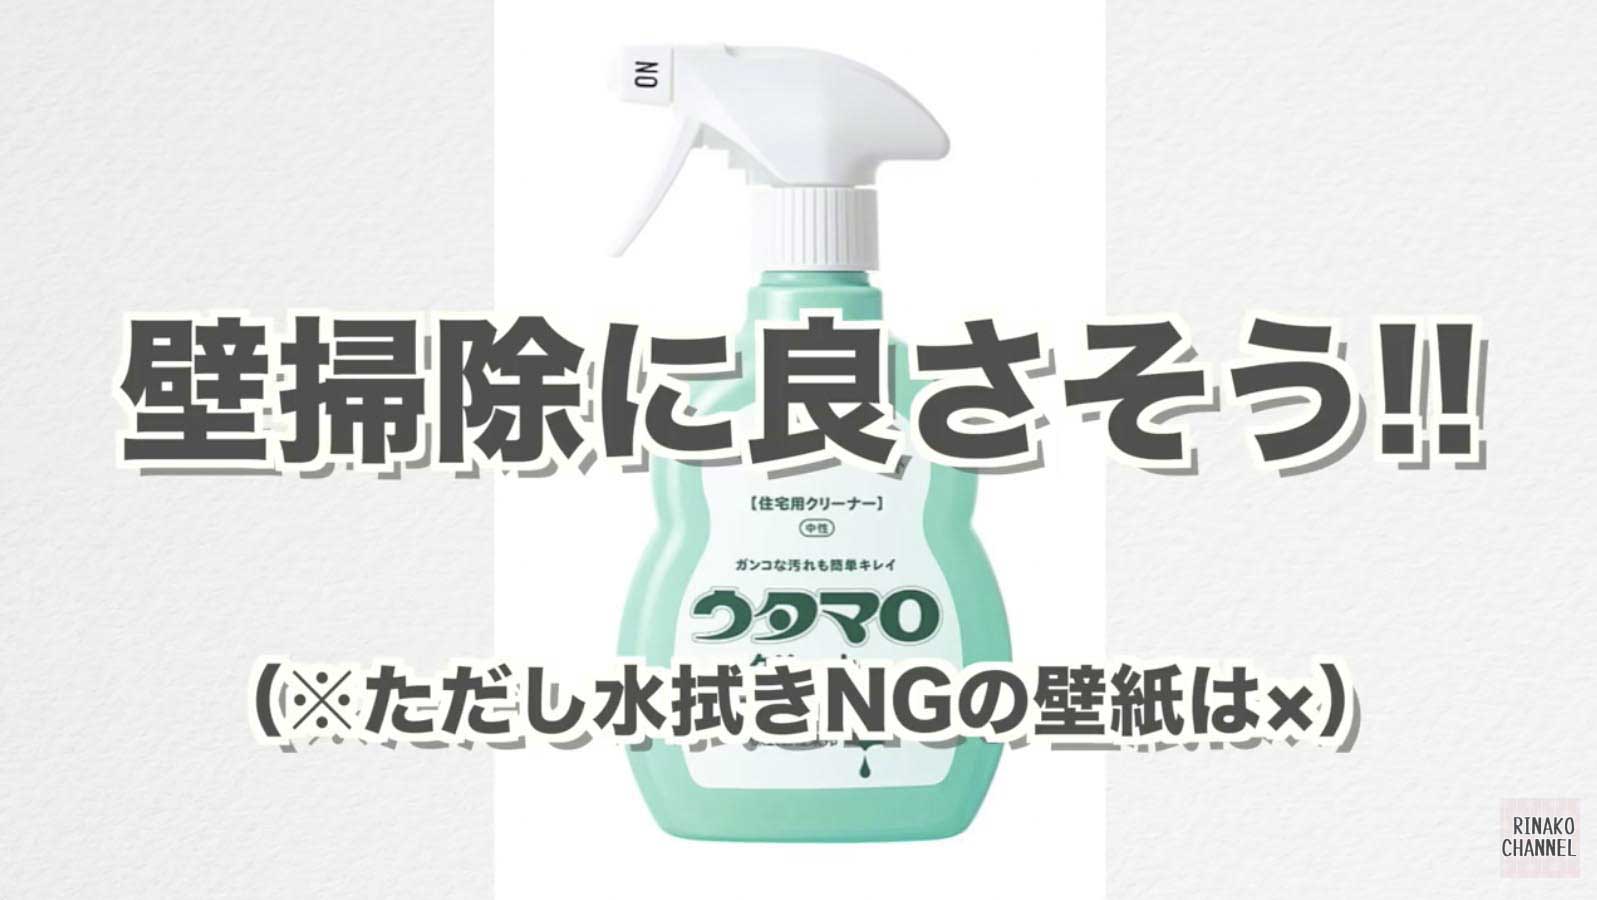 気になってた洗剤 ウタマロクリーナーを実際に使ってみました 良さを徹底レビュー Rinako Channel リナコチャンネル